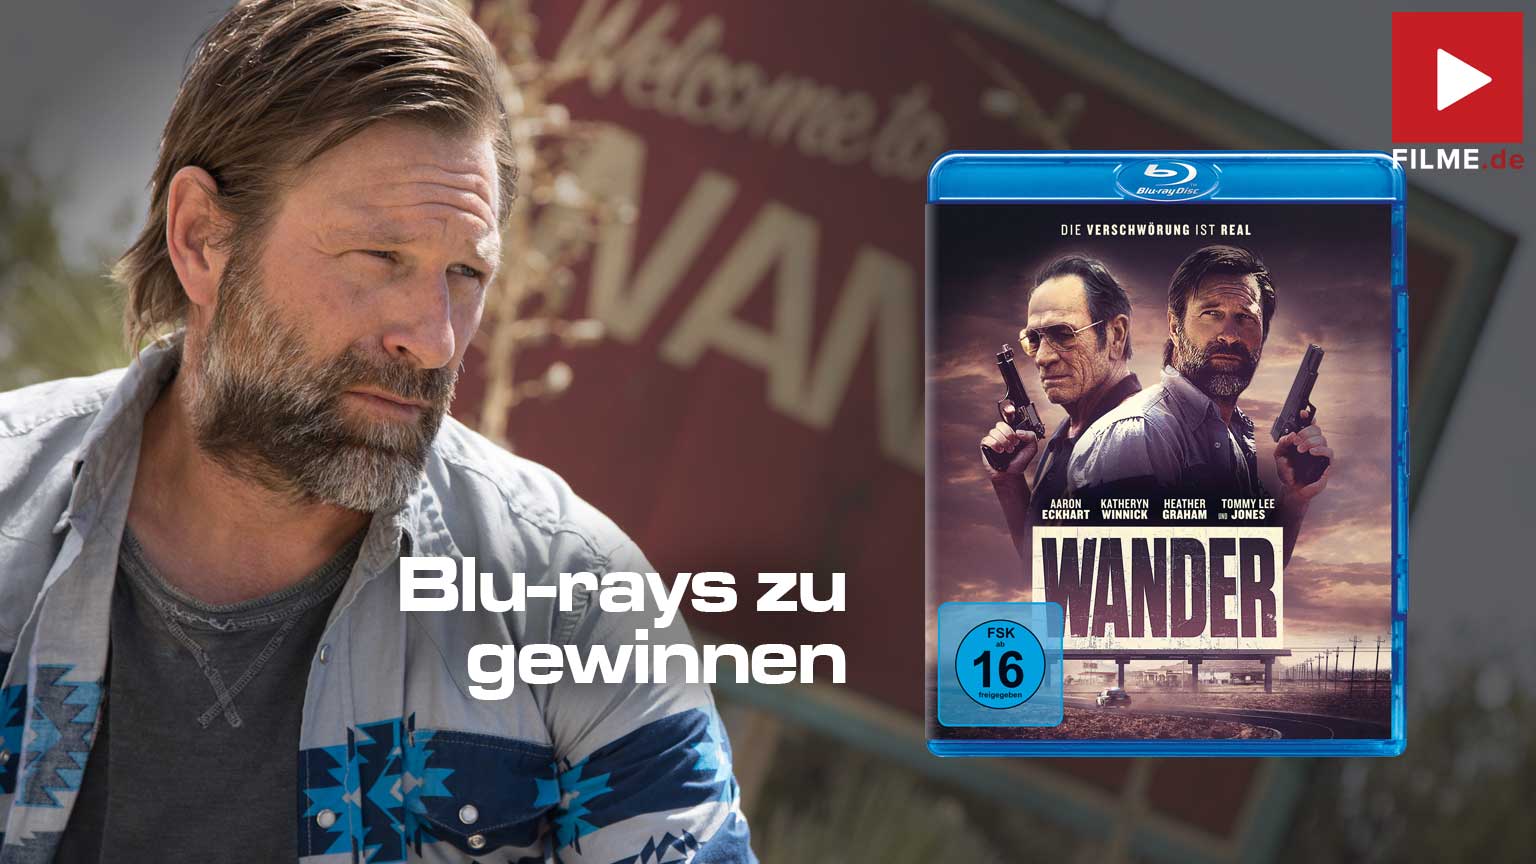 Wander - Die Verschwörung ist real Film 2021 Blu-ray DVD digital Gewinnspiel gewinnen Artikelbild